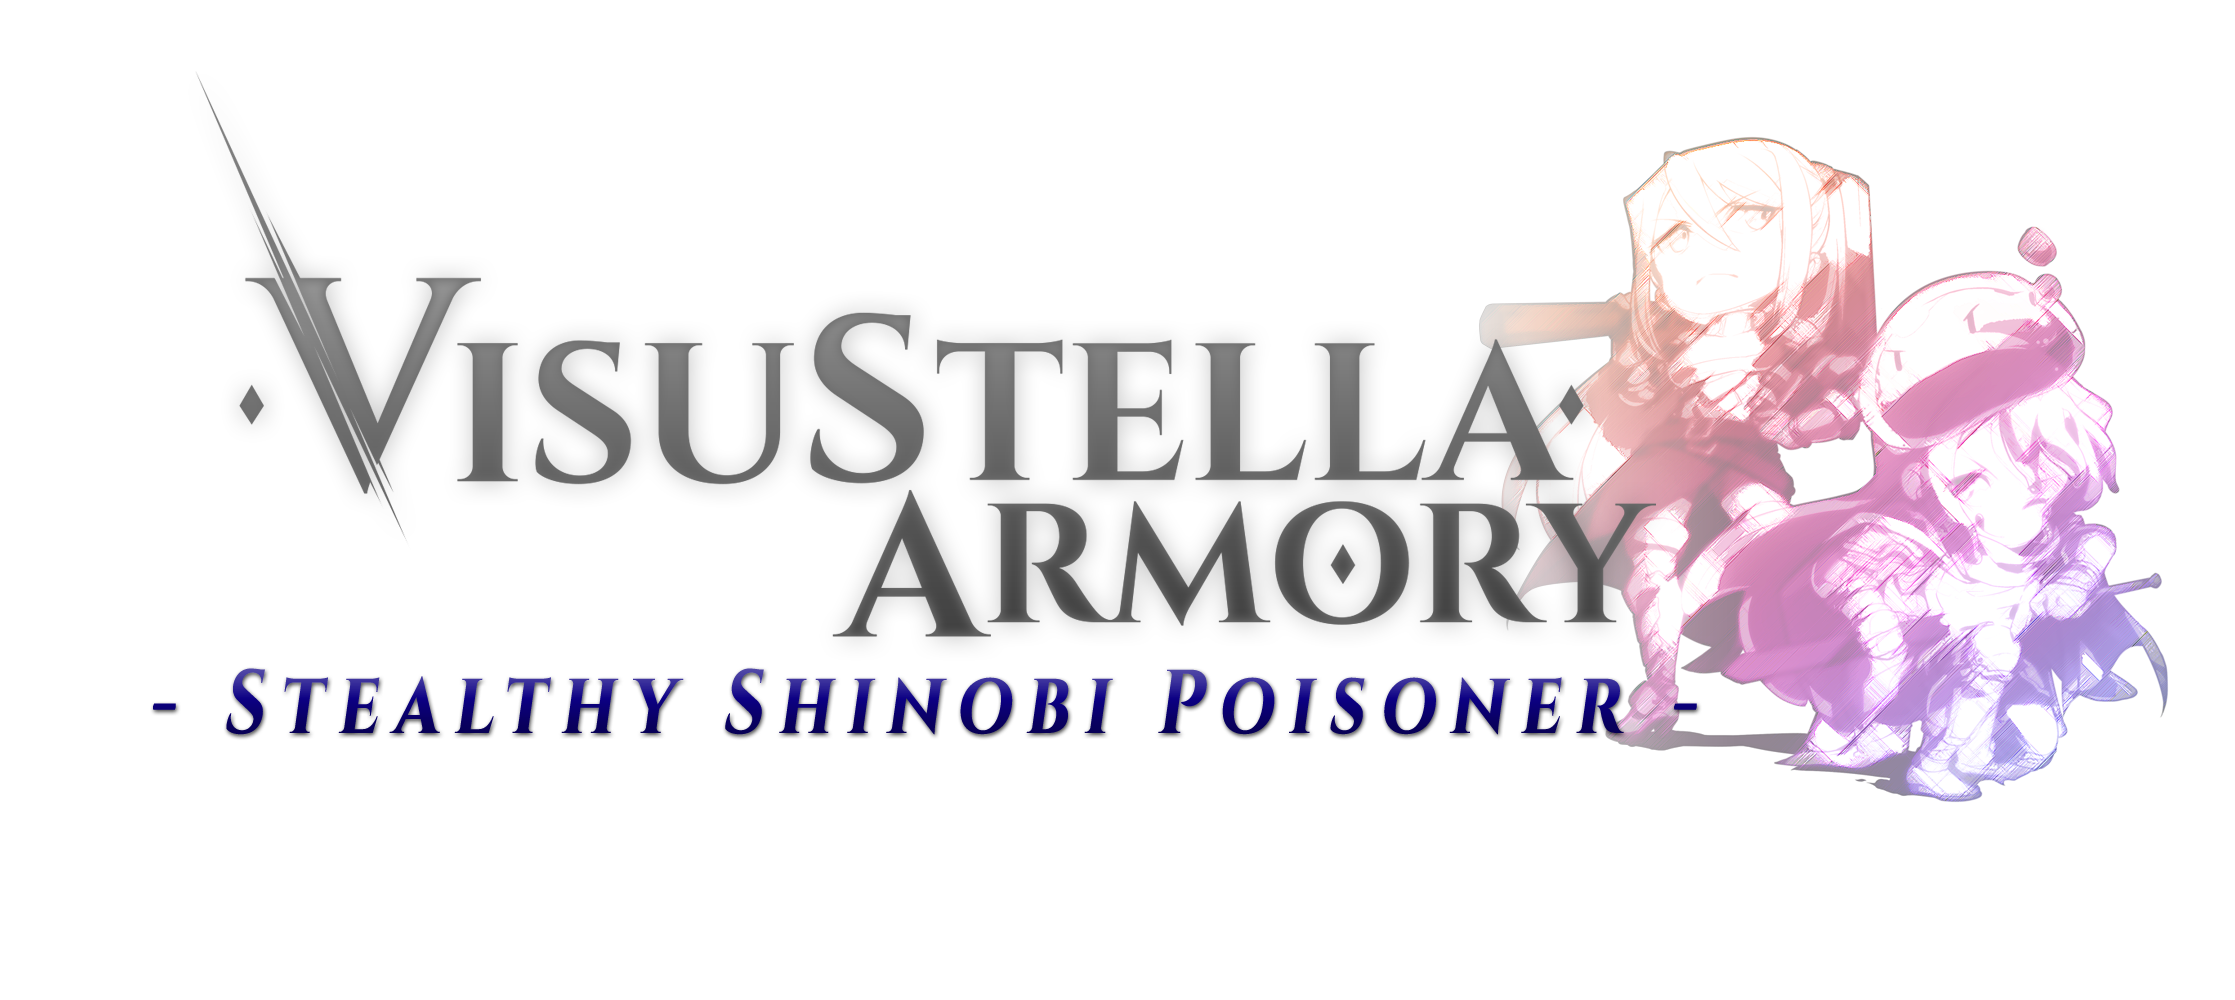 VisuStella Armory: Stealthy Shinobi Poisoner